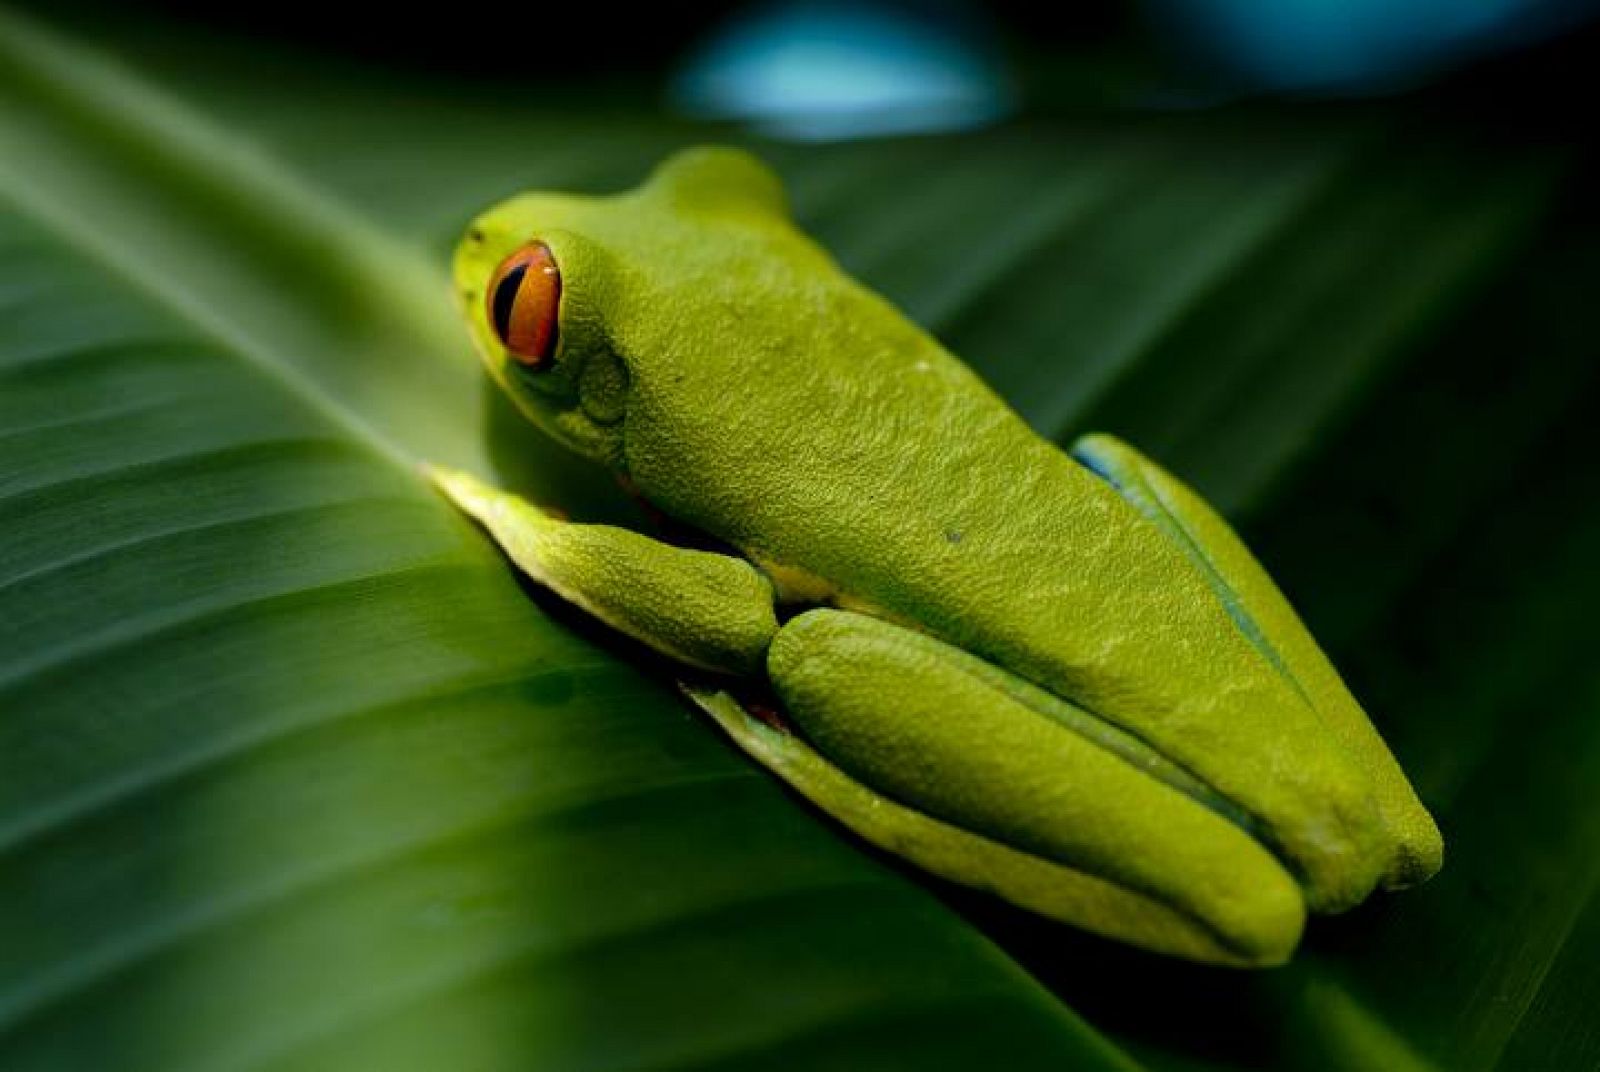 Fotografía de Ángel Navarro Gómez en al selva costarricense. Lo más llamativo son sus ojos rojos que contrastan con el verde intenso de su cuerpo.